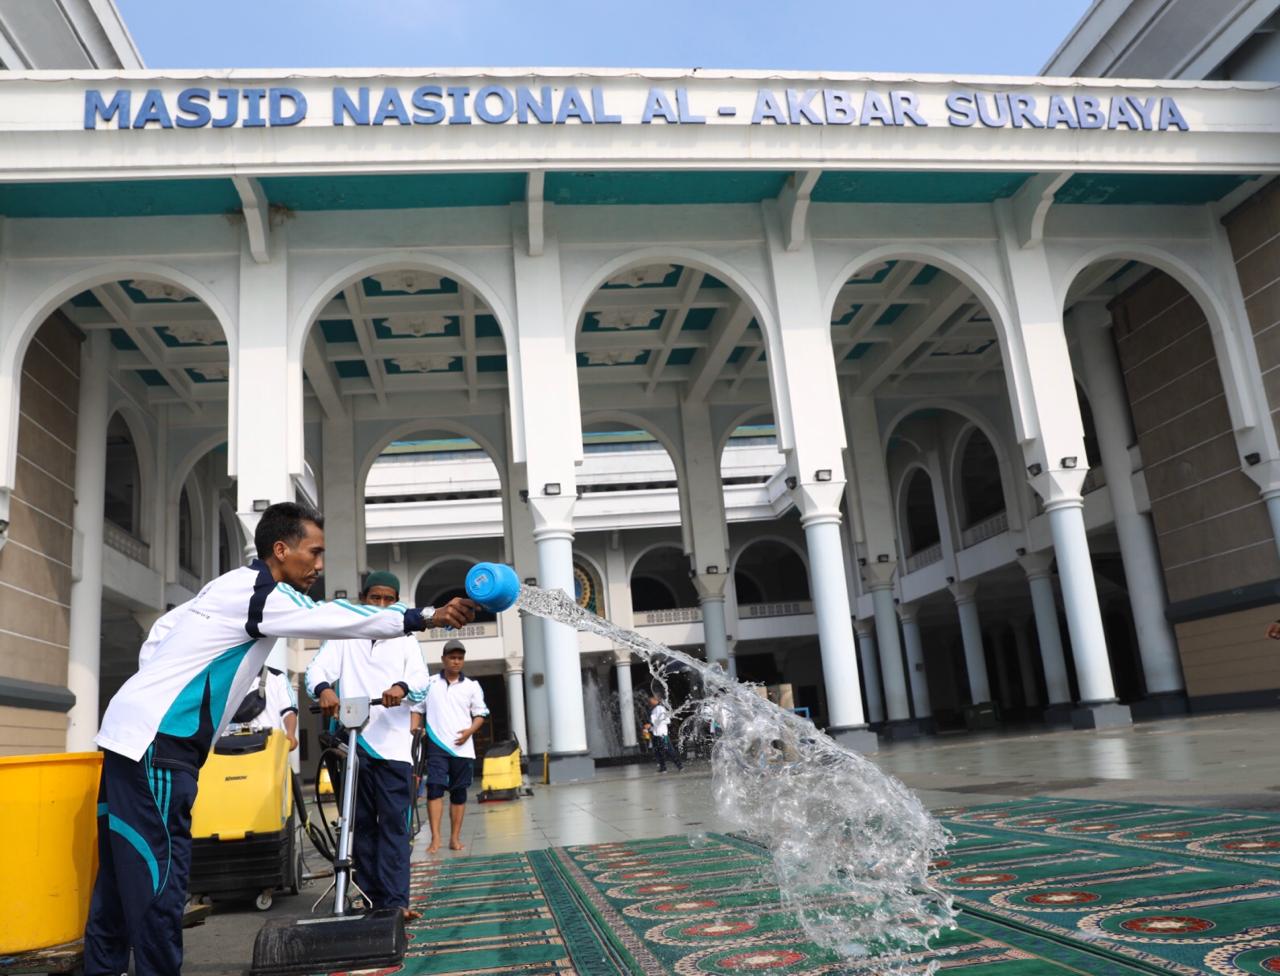 Petugas Masjid Nasional Al Akbar Surabaya, tengah membersihkan sajadah di dalam masjid. (Foto: Andhi Dwi/Ngopibareng.id)